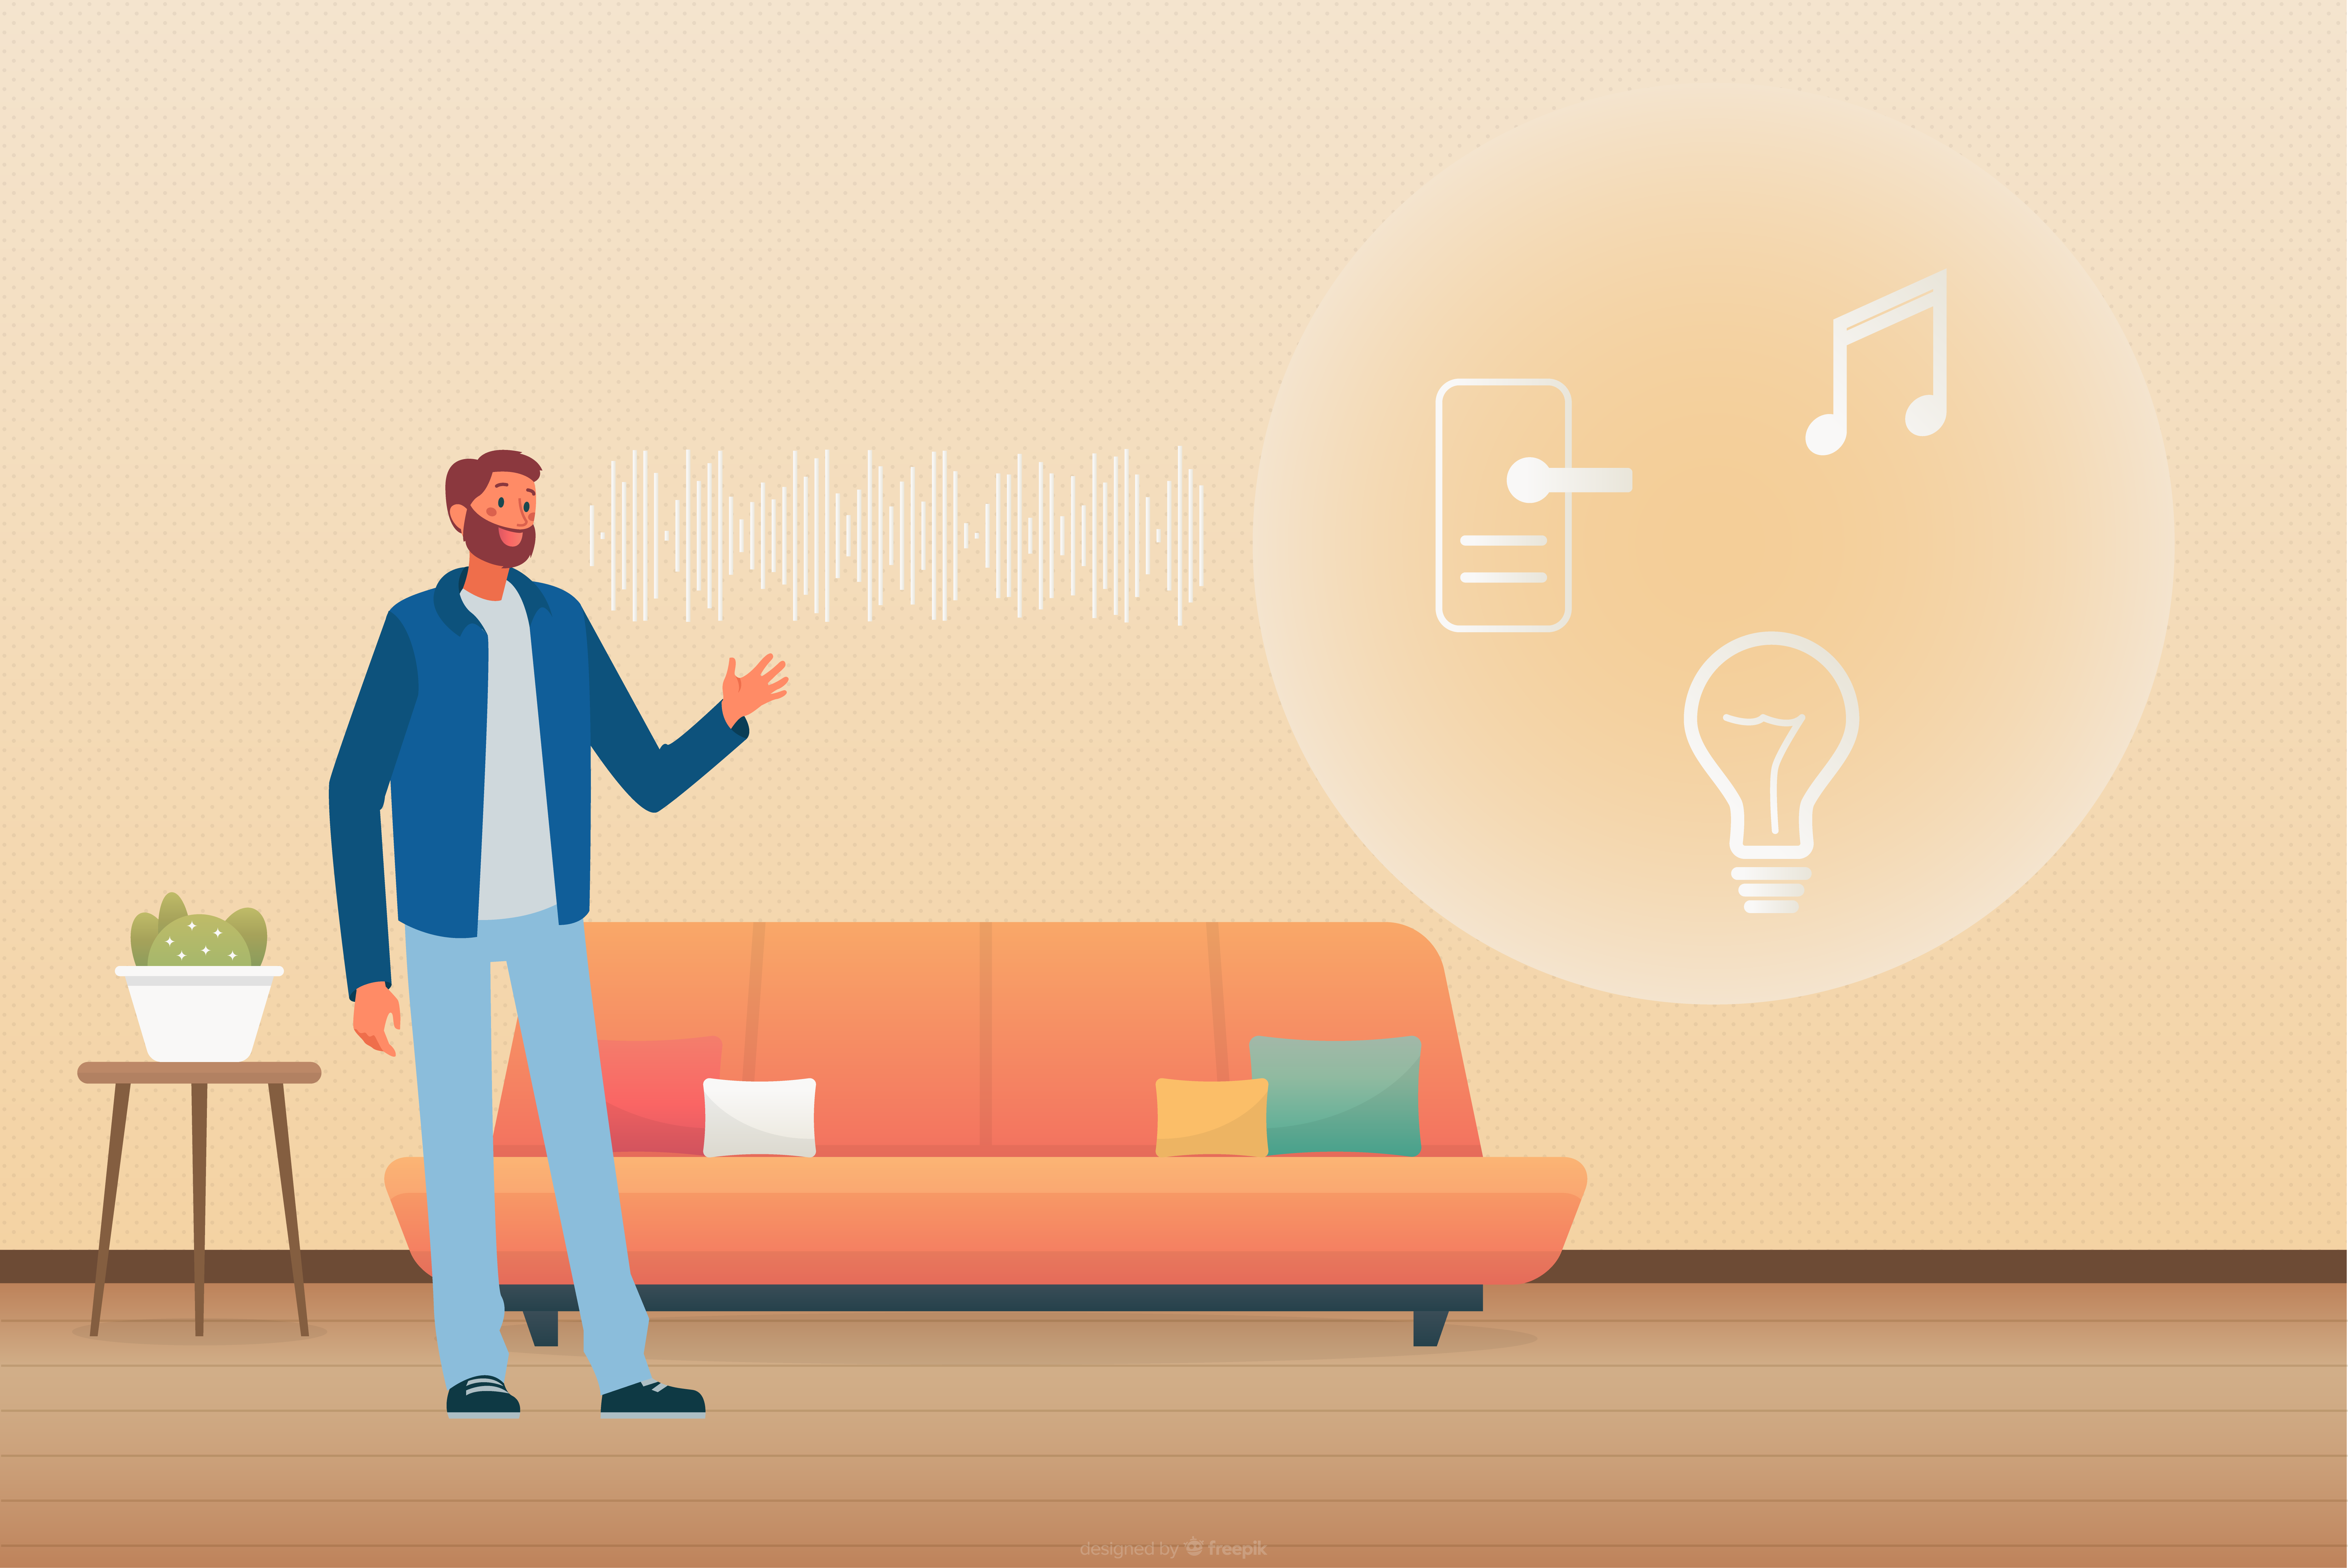 controlul vocal - mod simplu si distractiv de a comunica cu casa inteligenta